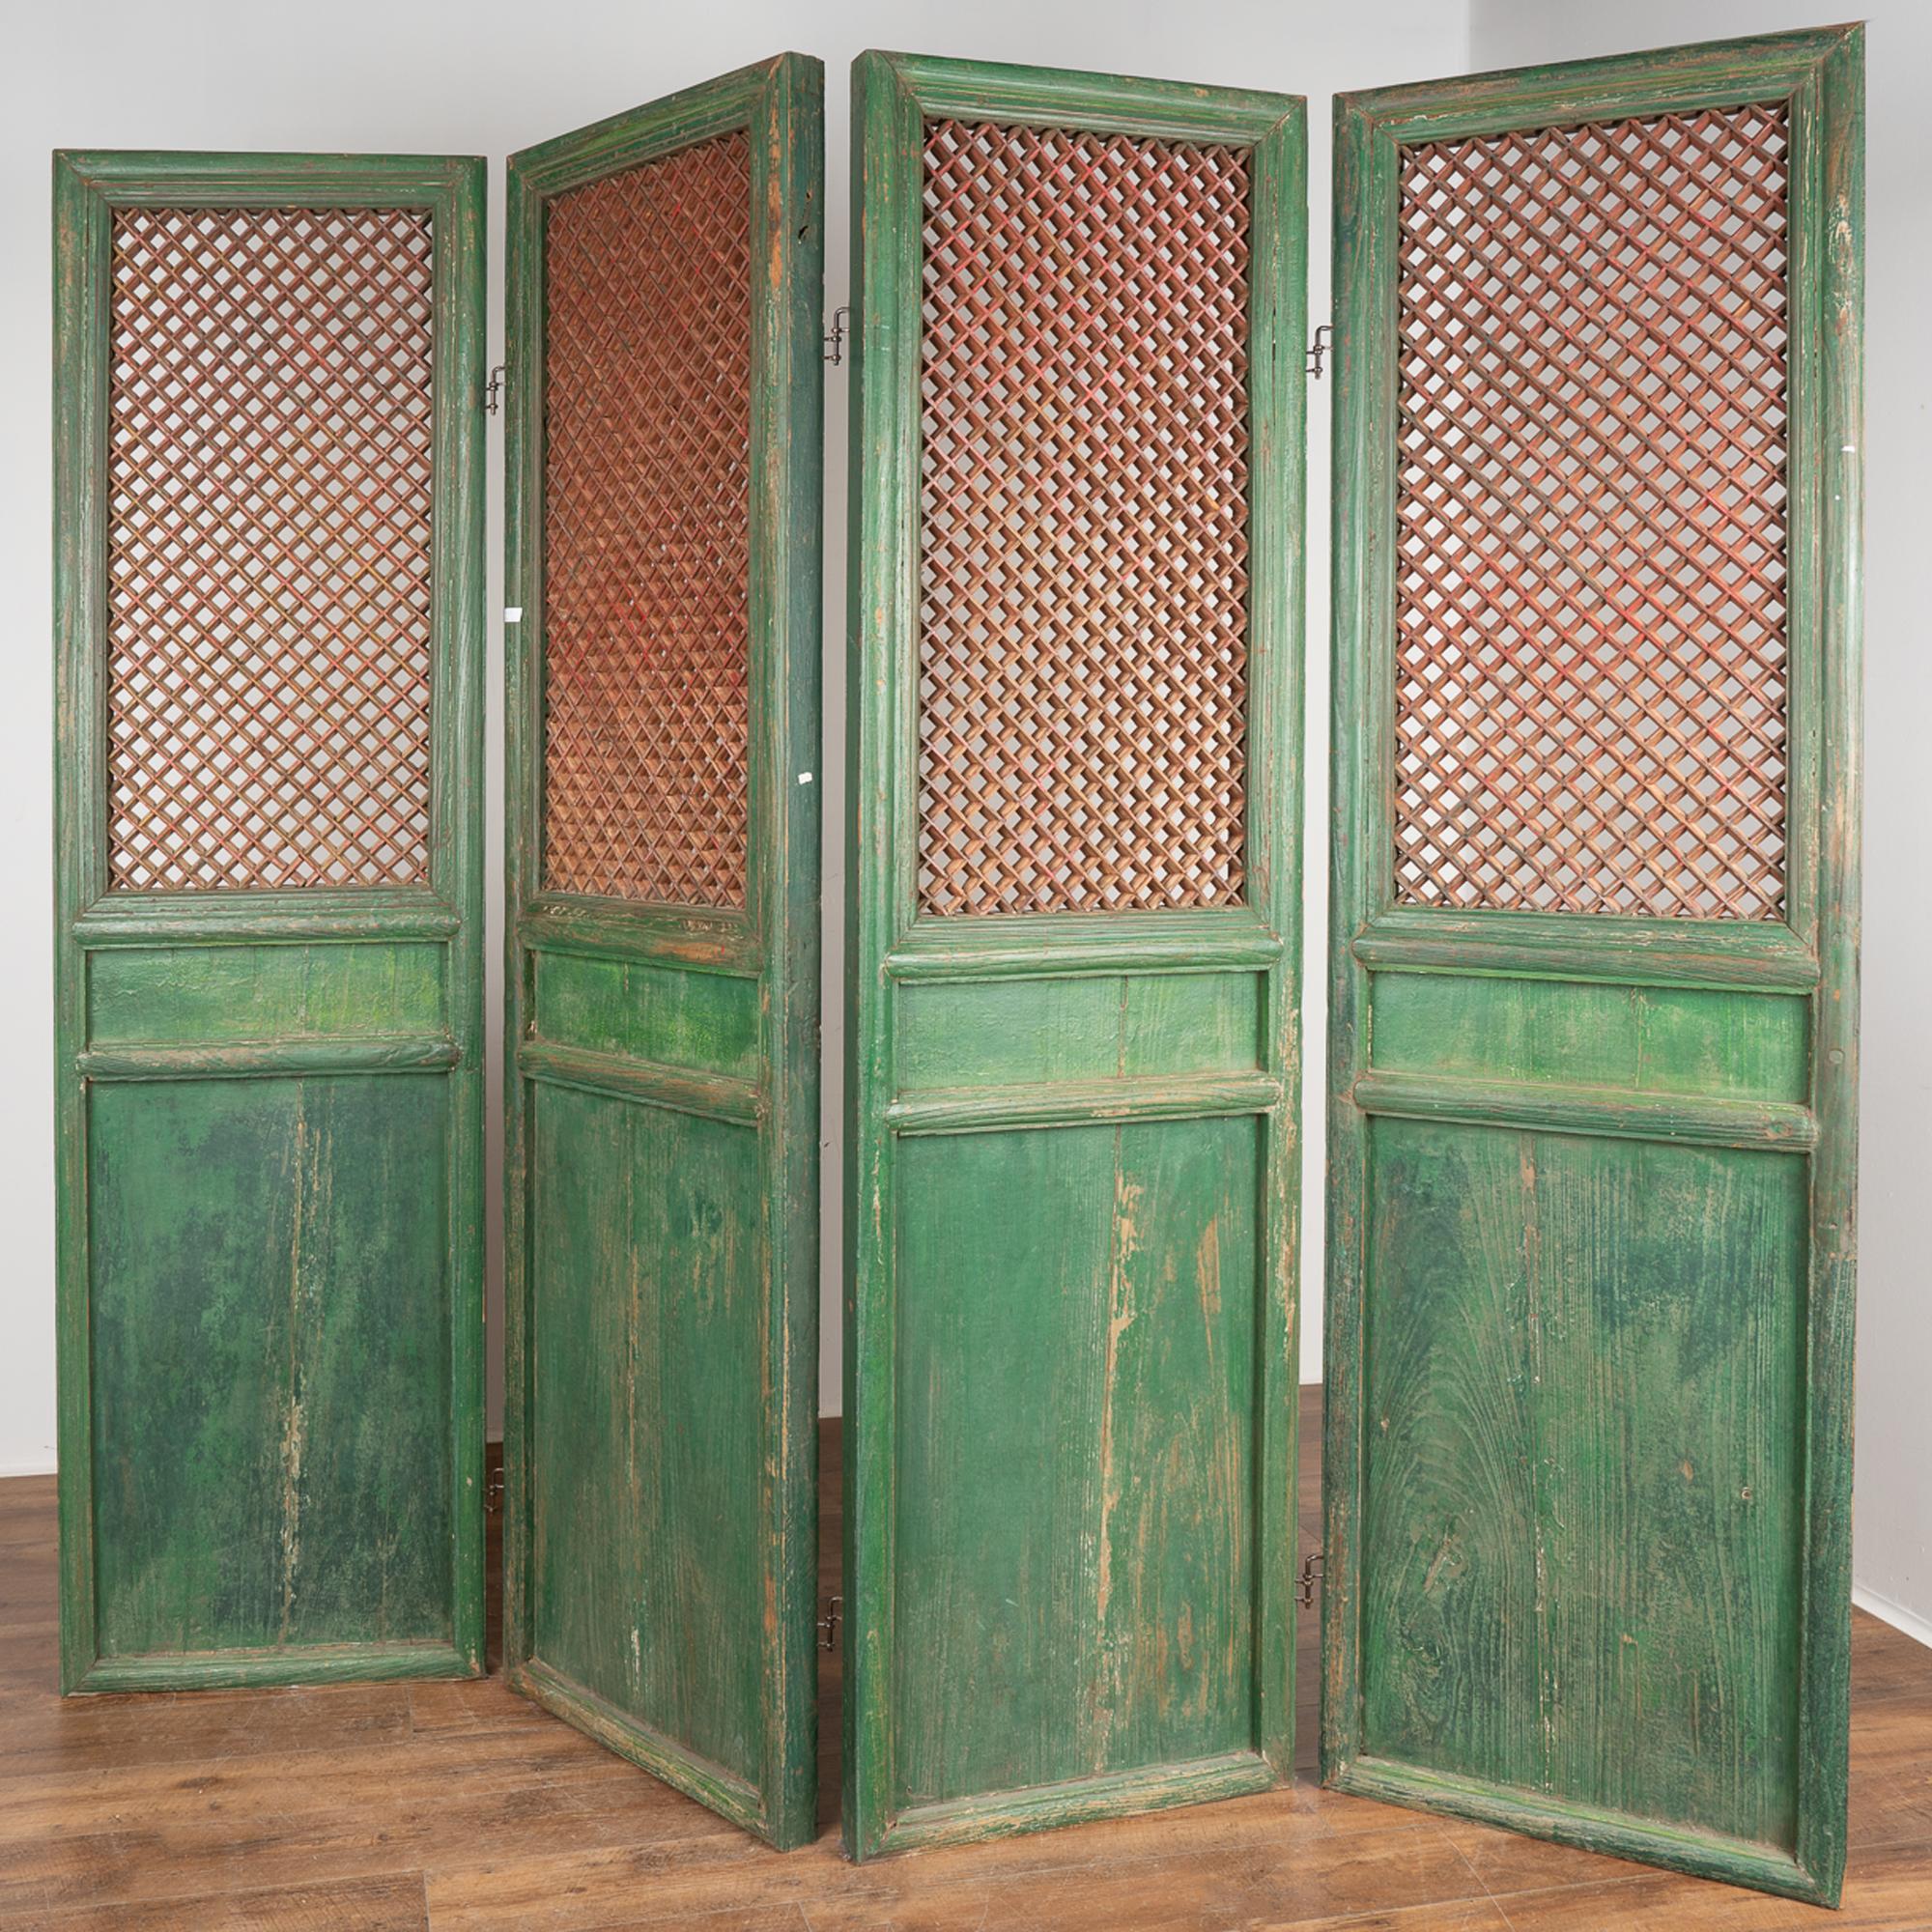 Un ensemble de quatre grands panneaux de paravent intérieur en bois d'orme sculpté qui ont conservé leur finition peinte verte d'origine, surmontés d'un design chinois traditionnel en frettes laissé en bois naturel contrasté avec de faibles résidus